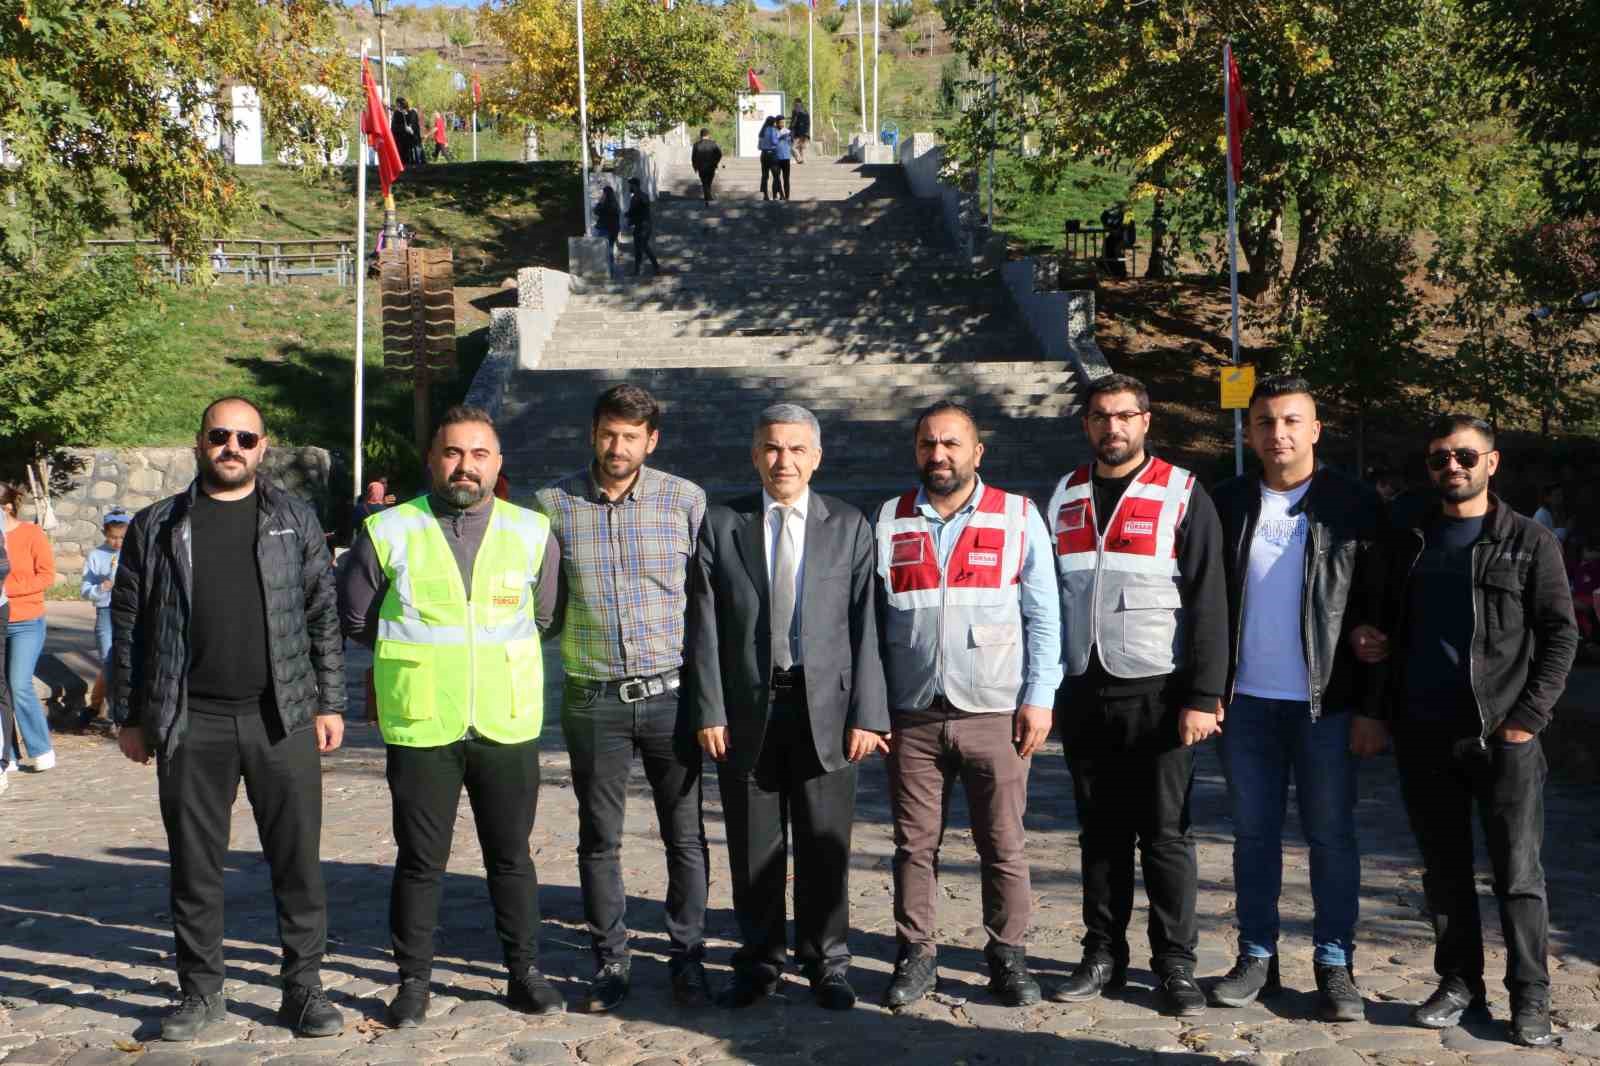 Diyarbakır’da bir yılda 600 tur otobüsü denetlendi